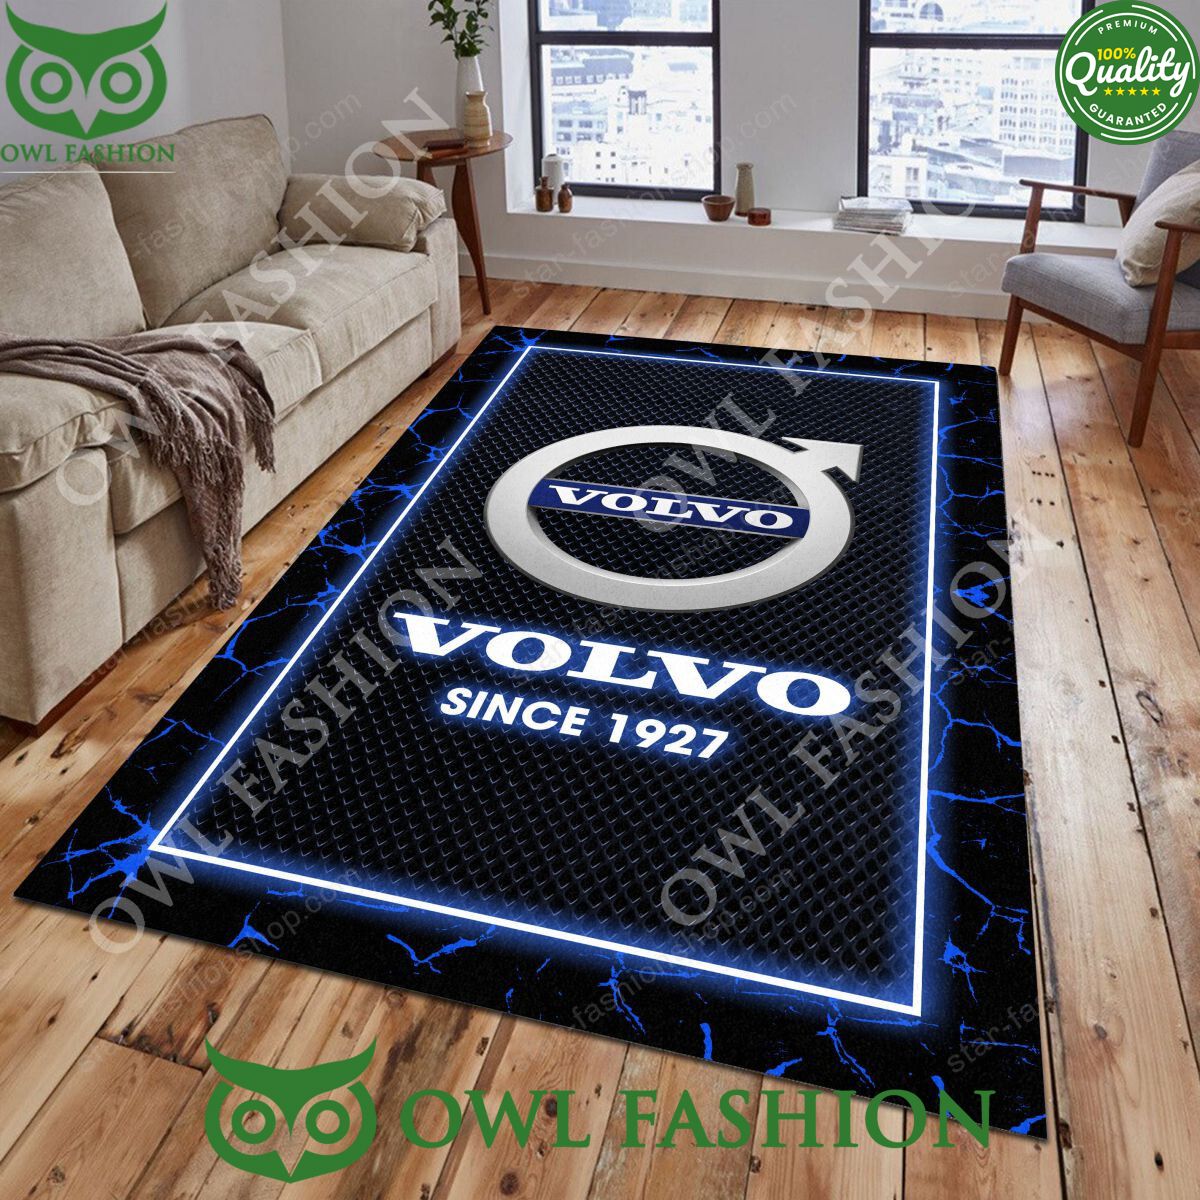 volvo trending car brand limited carpet rug 1 S1tLW.jpg